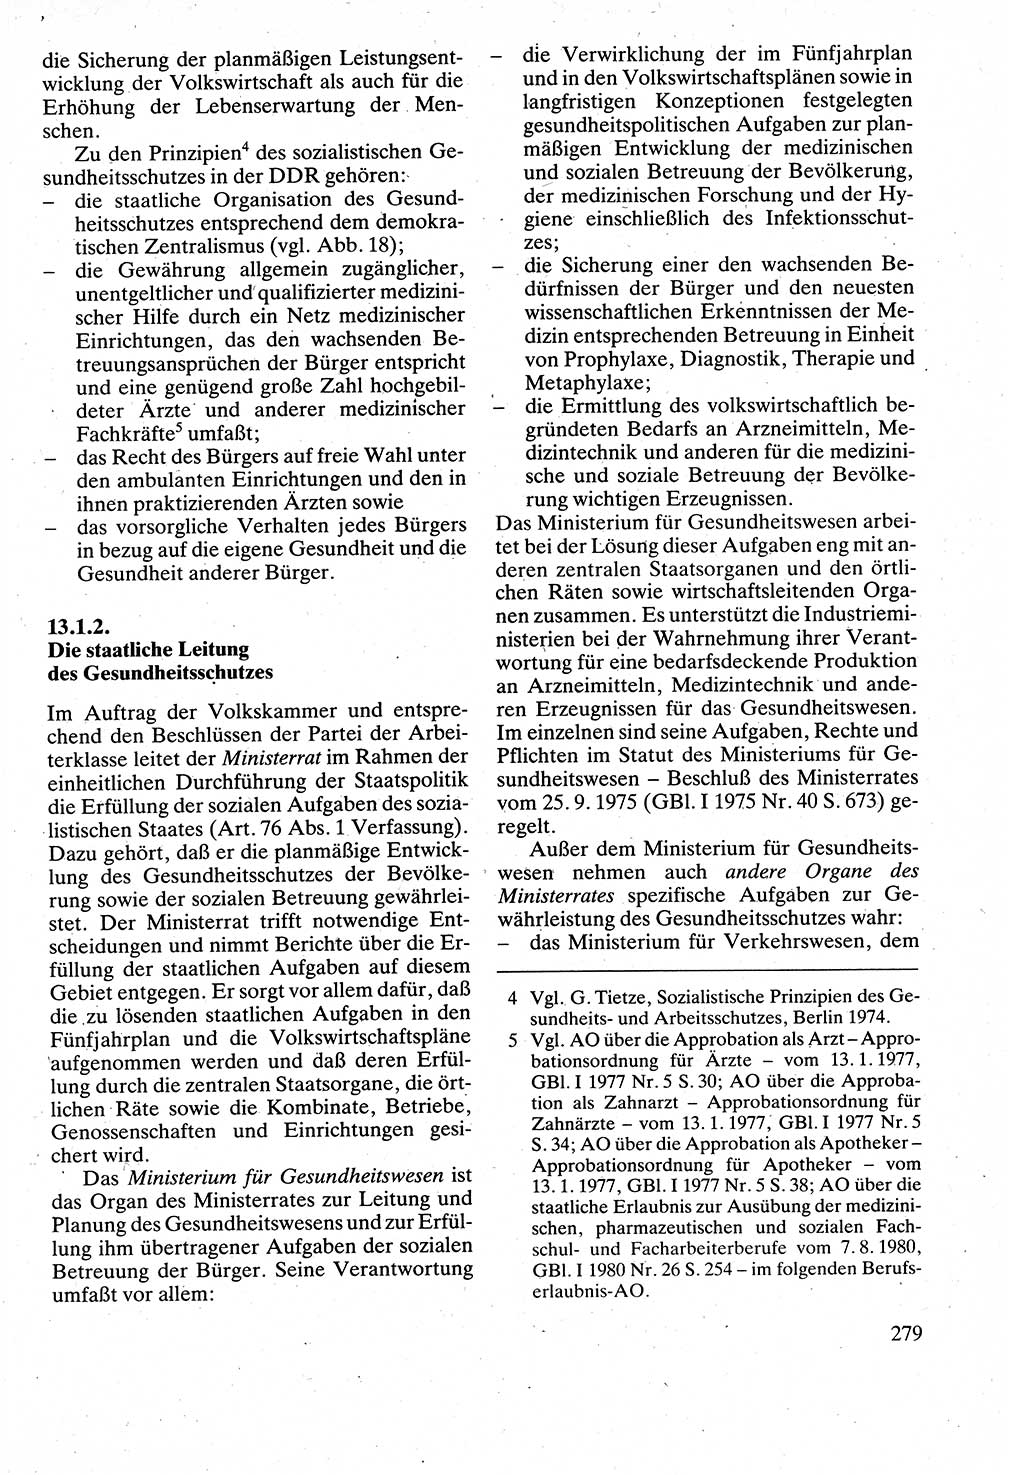 Verwaltungsrecht [Deutsche Demokratische Republik (DDR)], Lehrbuch 1988, Seite 279 (Verw.-R. DDR Lb. 1988, S. 279)